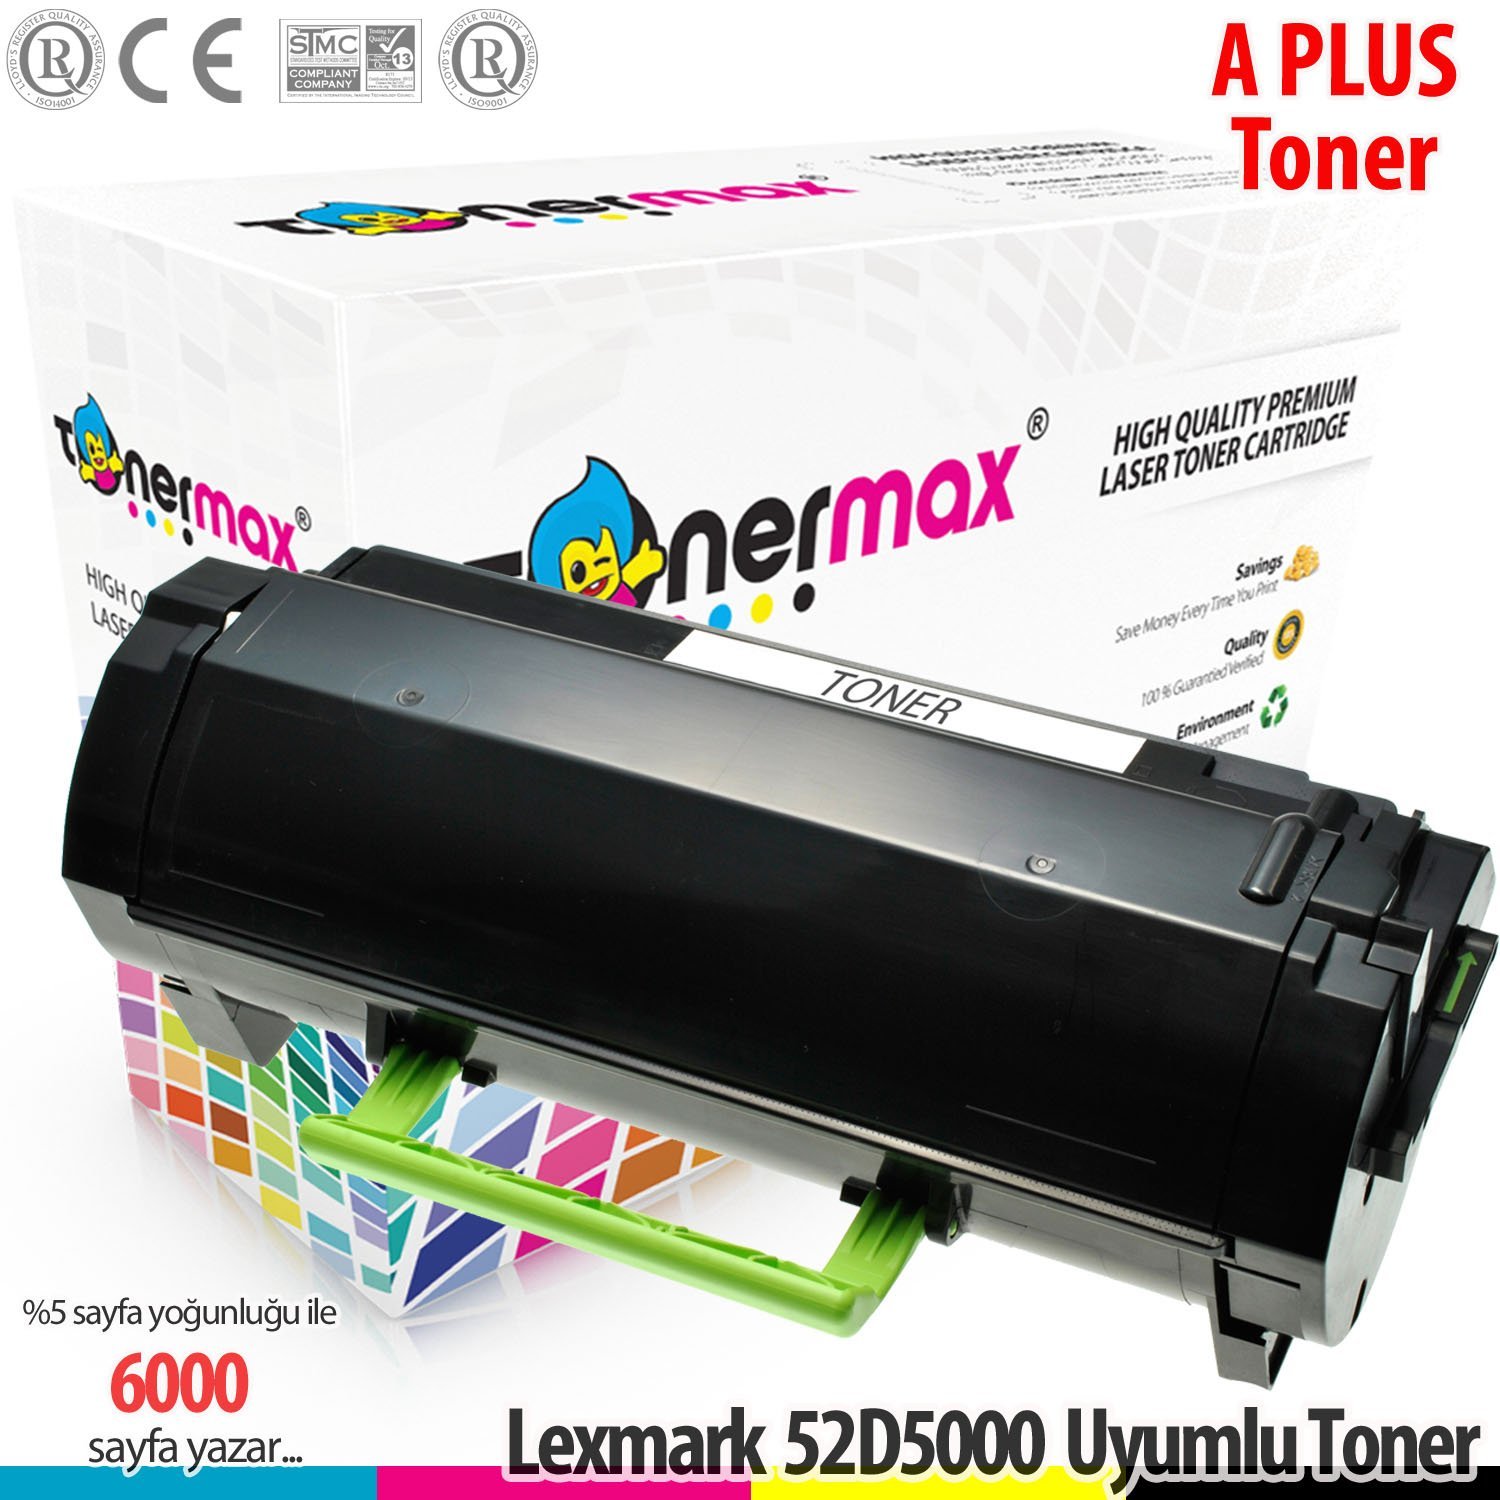 Lexmark 525 / 52D5000 / MS810 / MS811 / MS812 A Plus Muadil Toneri 6K